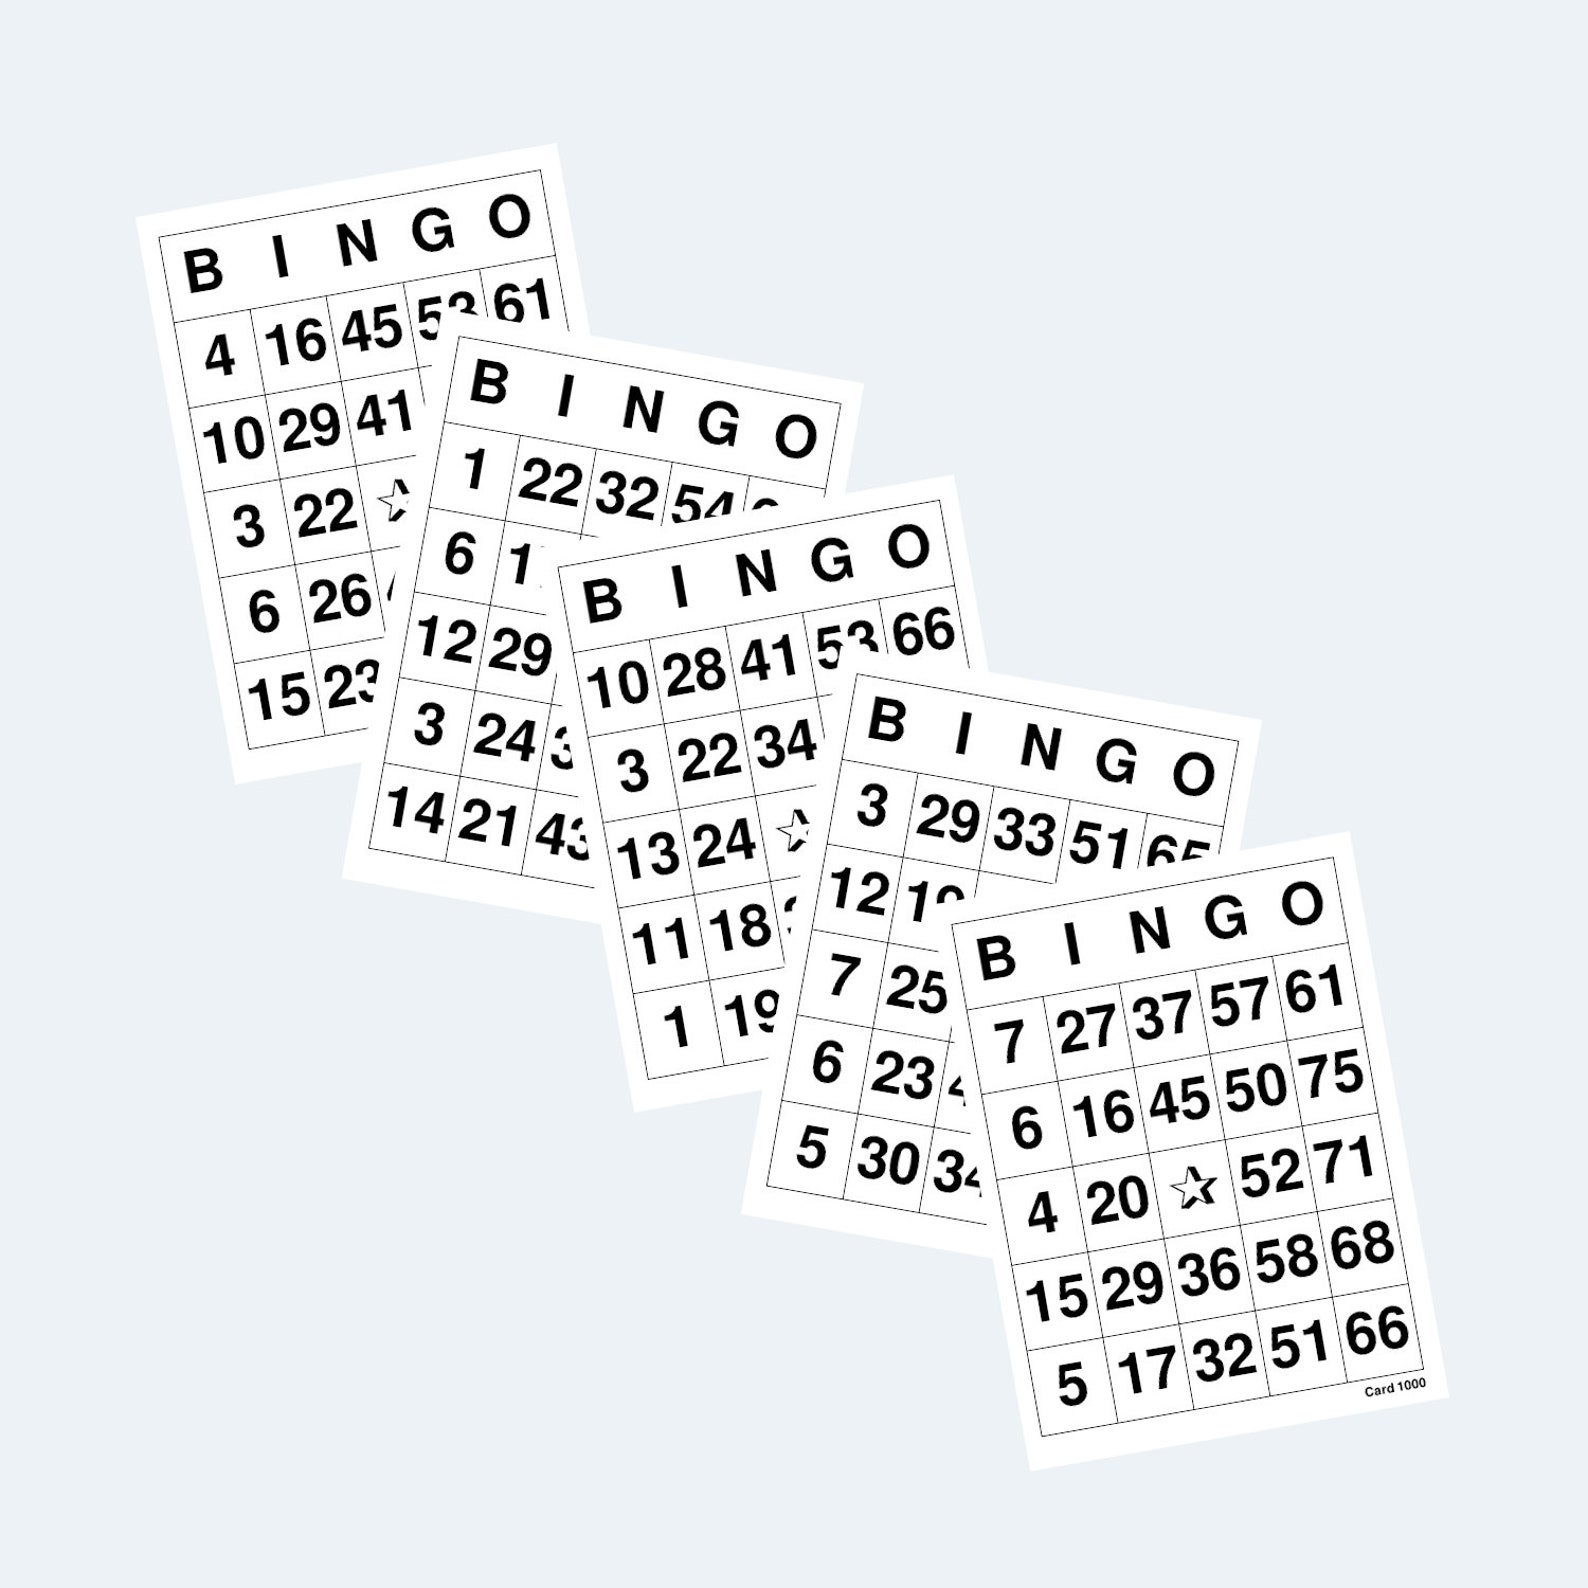 bingo-cards-printable-1-to-75-bingo-cards-4-per-page-etsy